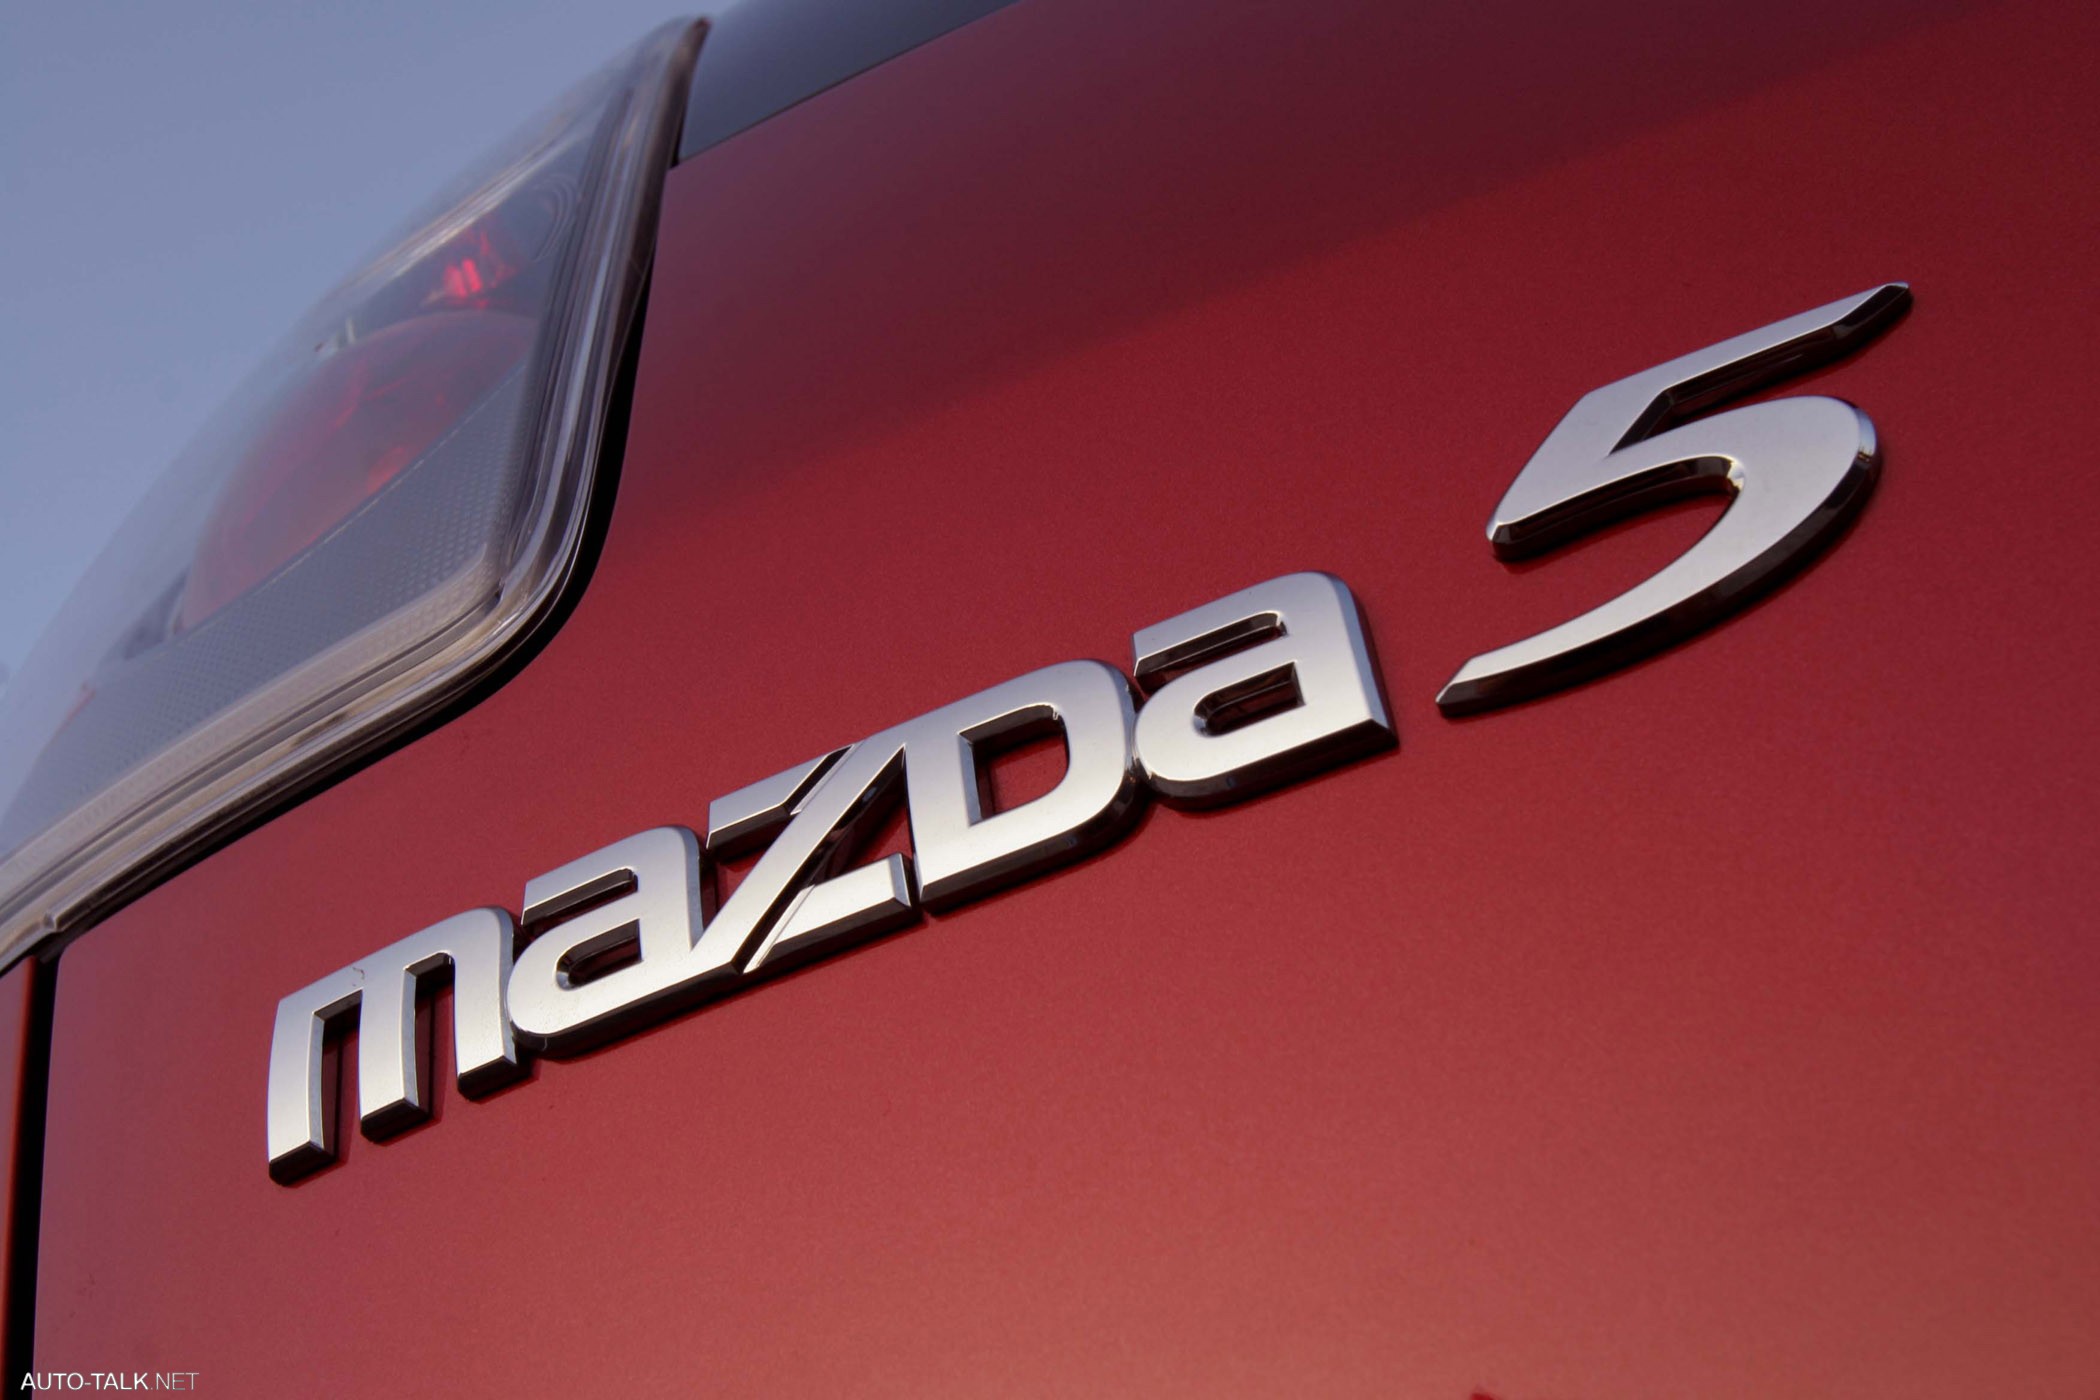 2006 Mazda5